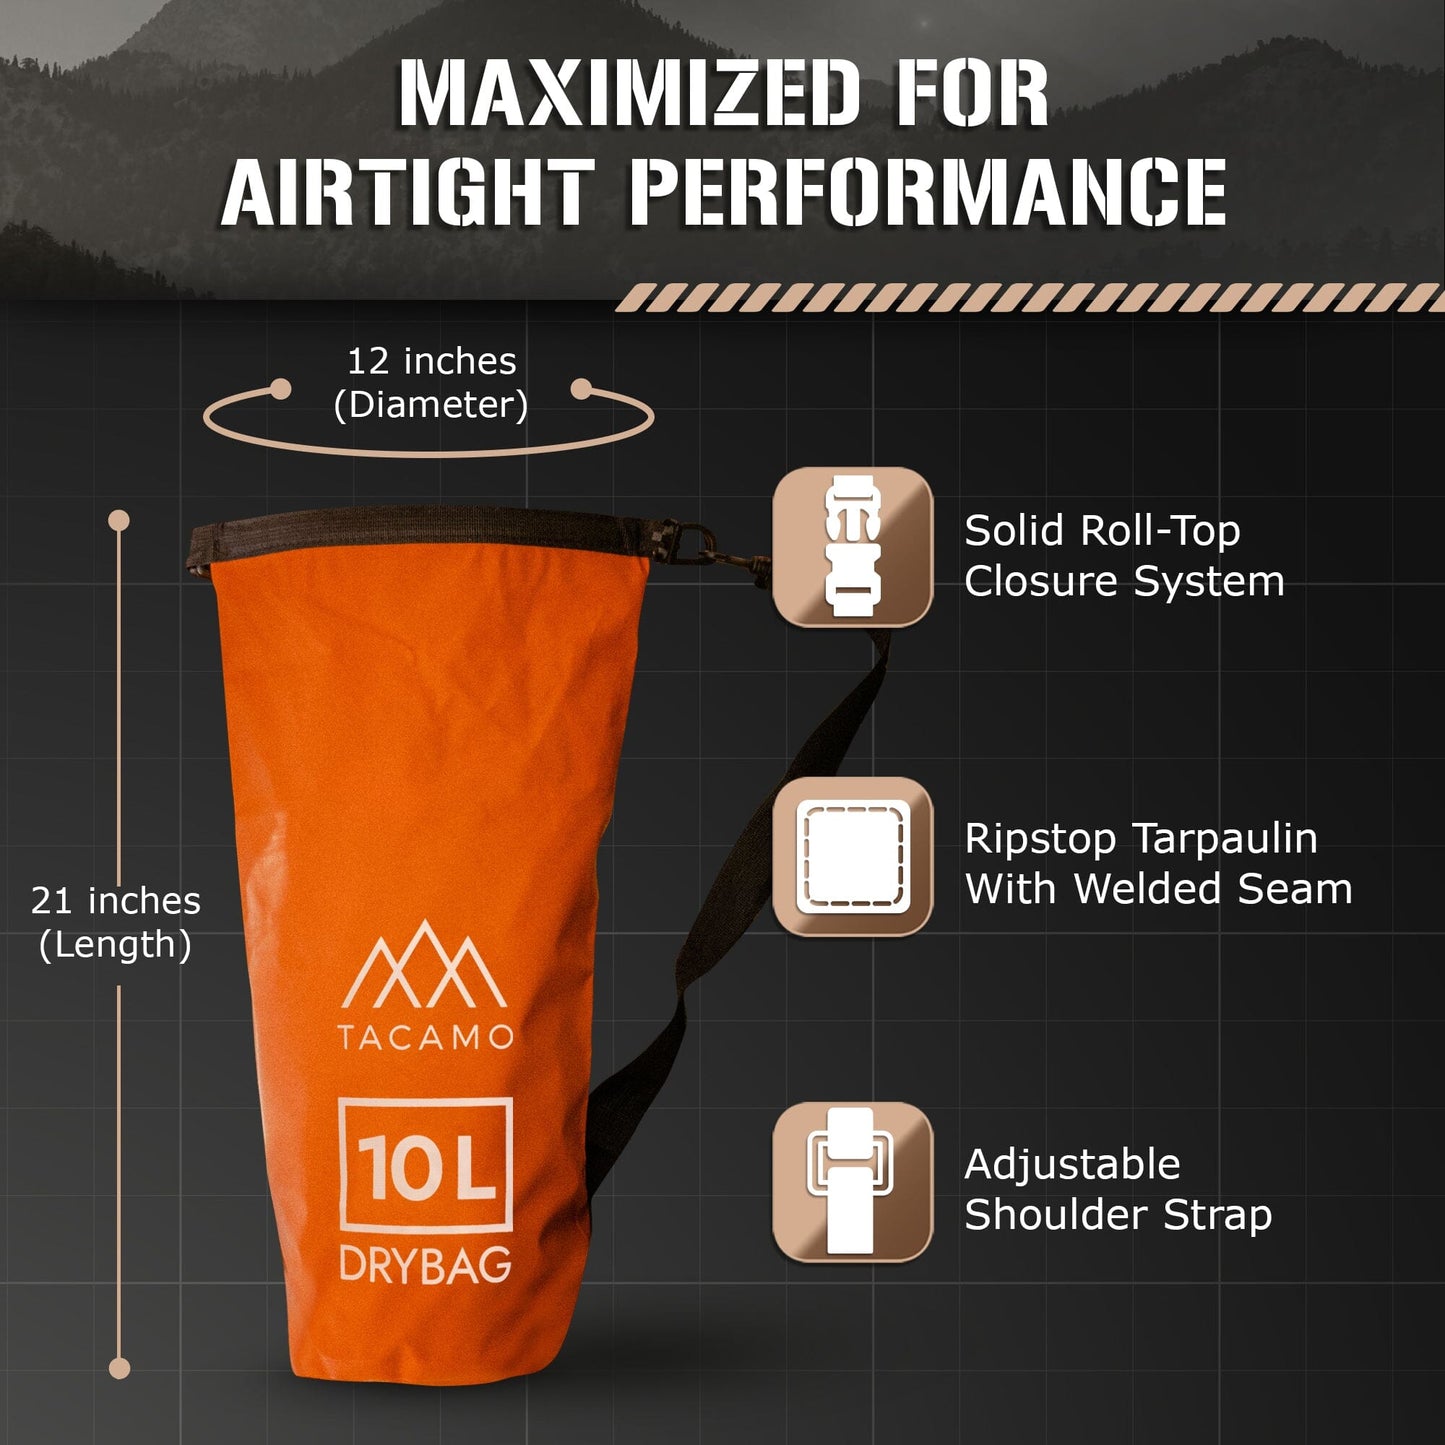 Orange TACAMO dry bag displaying airtight performance features